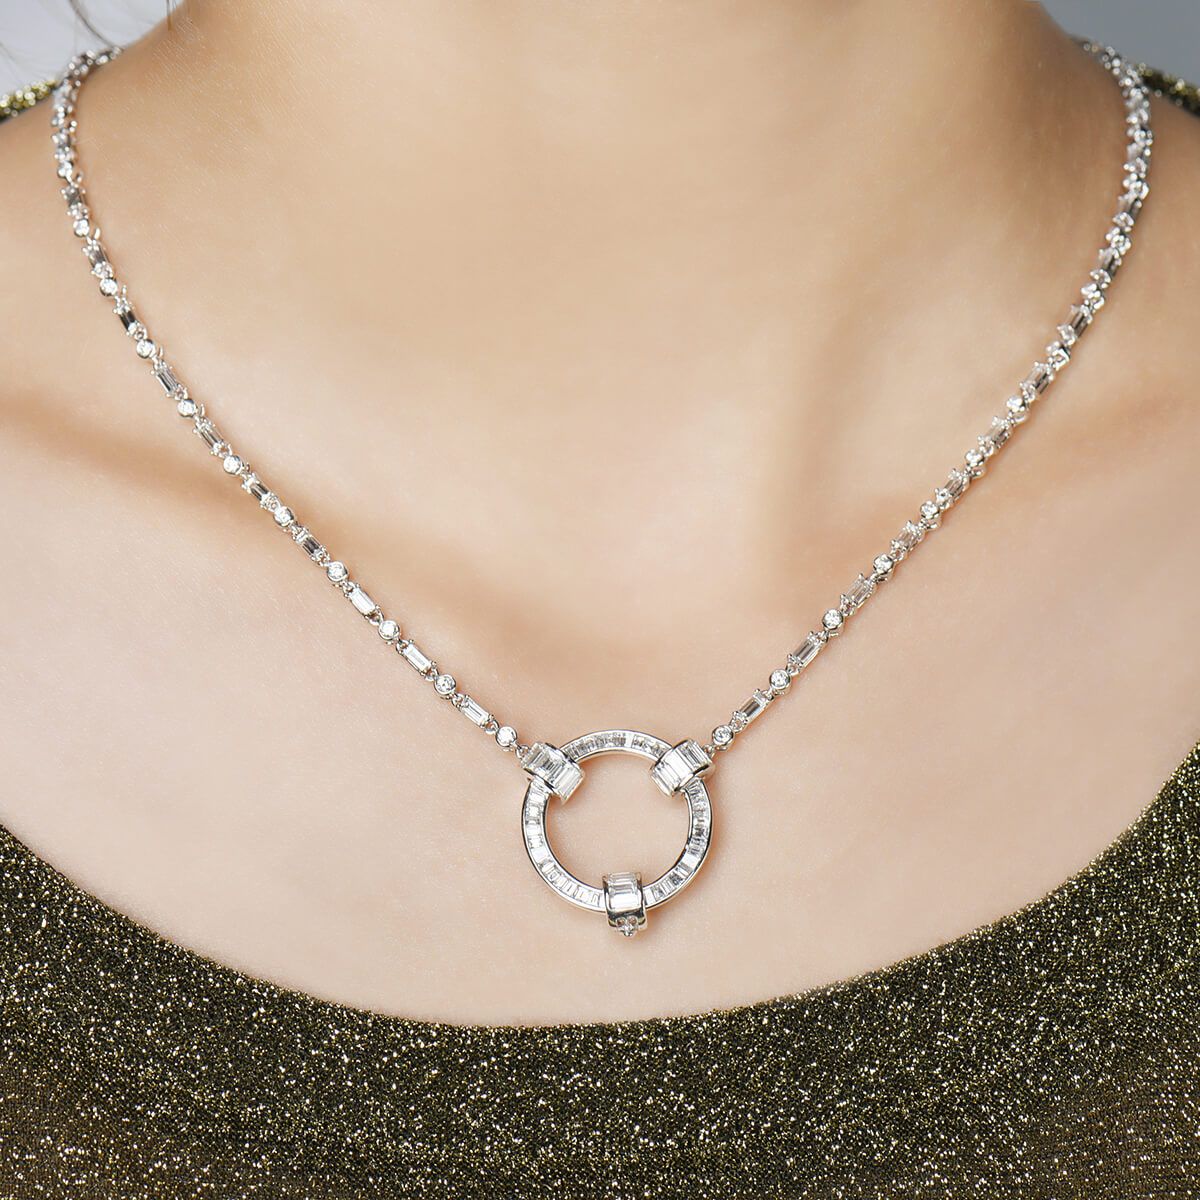  White Diamond Necklace, 6.59 Ct. TW, Baguette shape, EG_Lab Certified, J5826182436